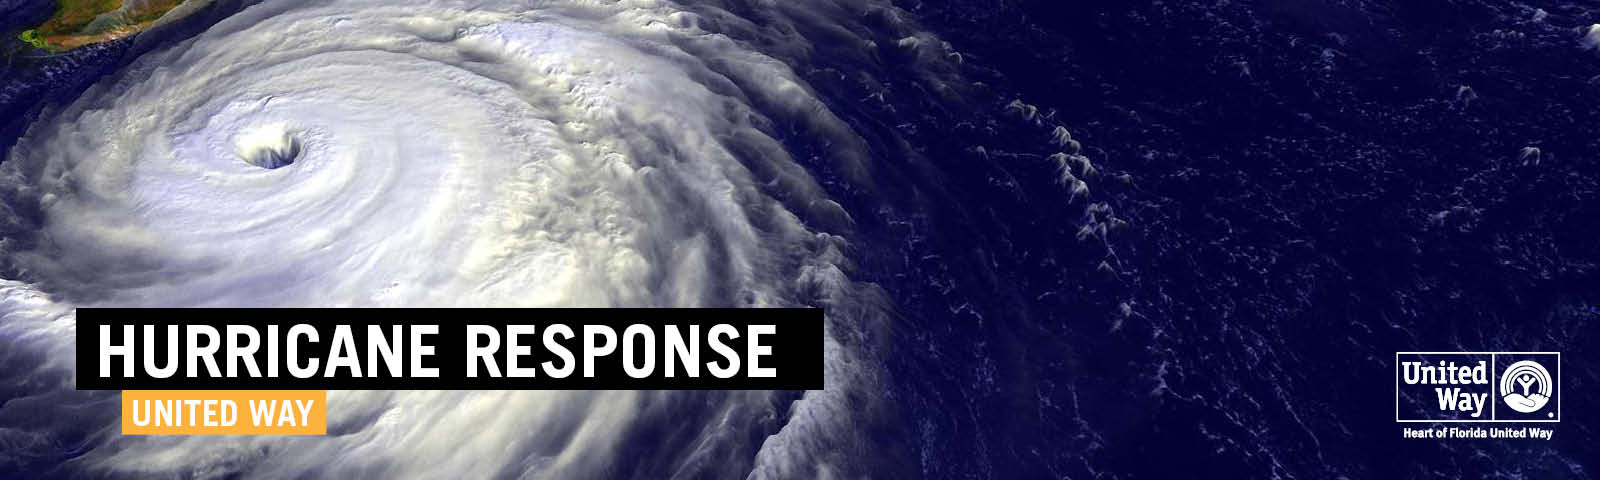 HurricaneResponse png